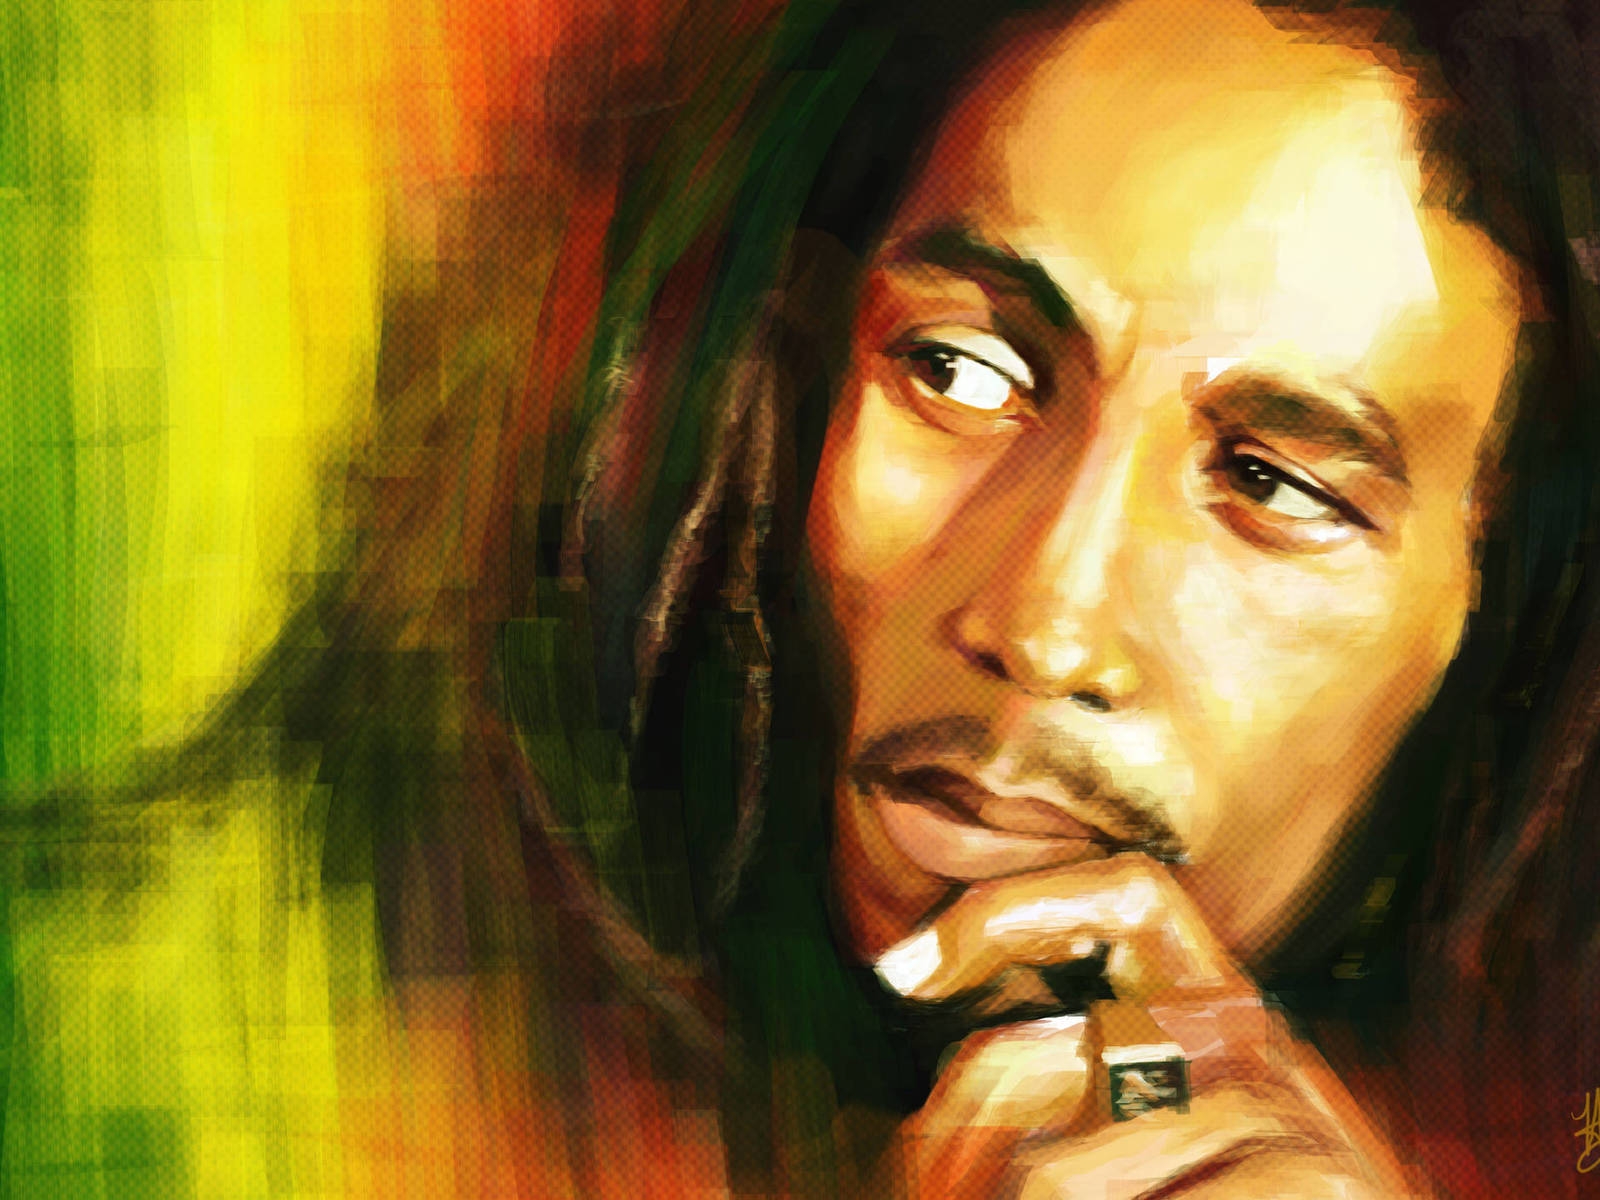 Bob Marley Artwork for 1600 x 1200 resolution